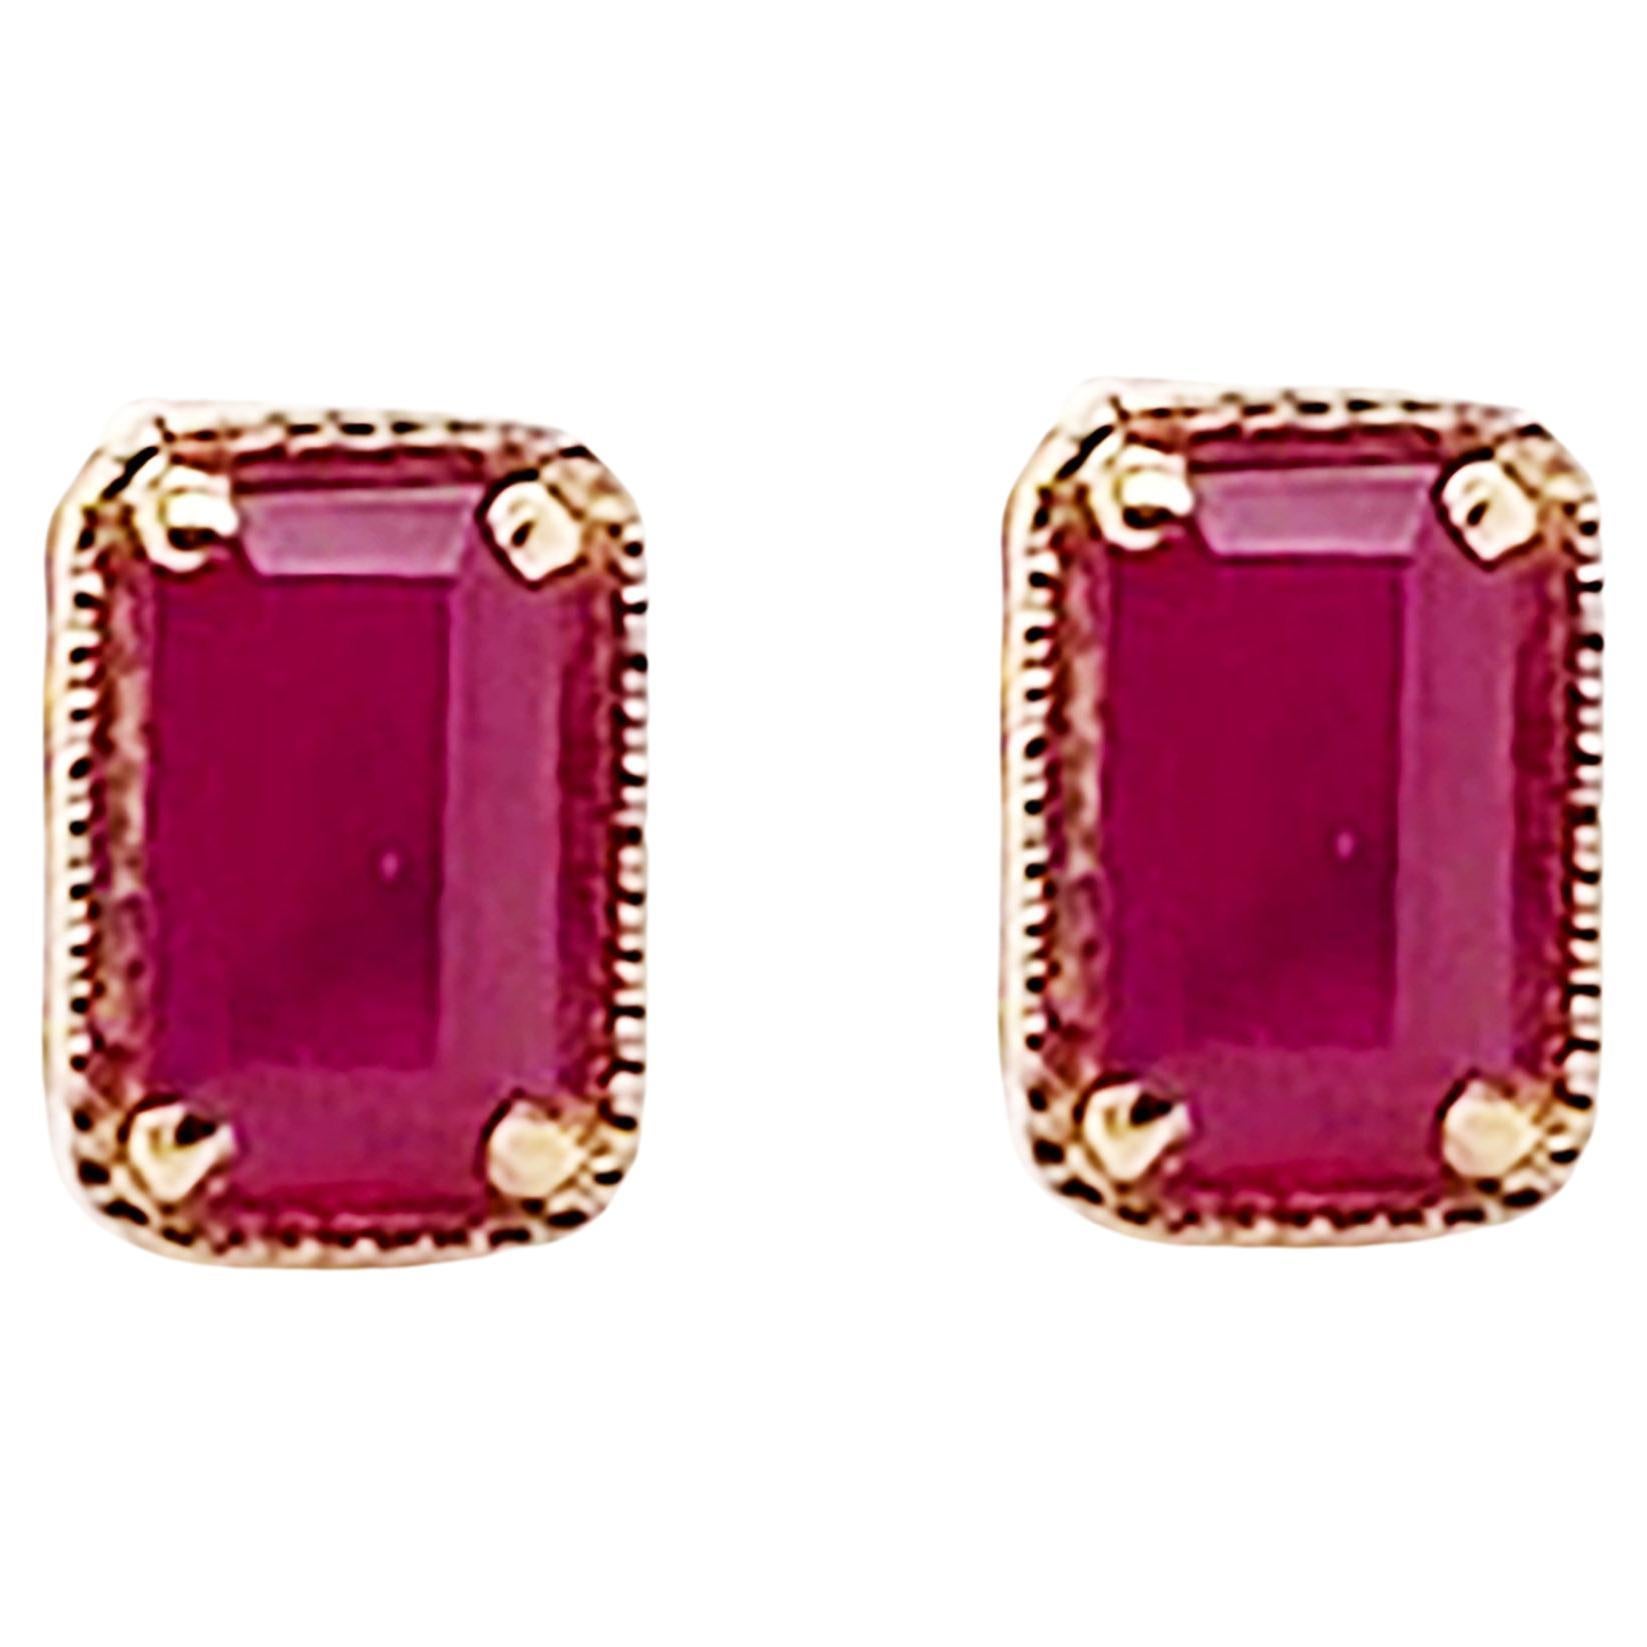 Geometric Ruby Earrings 14K Gold .55 Carat Emerald Cut Ruby in Stud Style, July For Sale